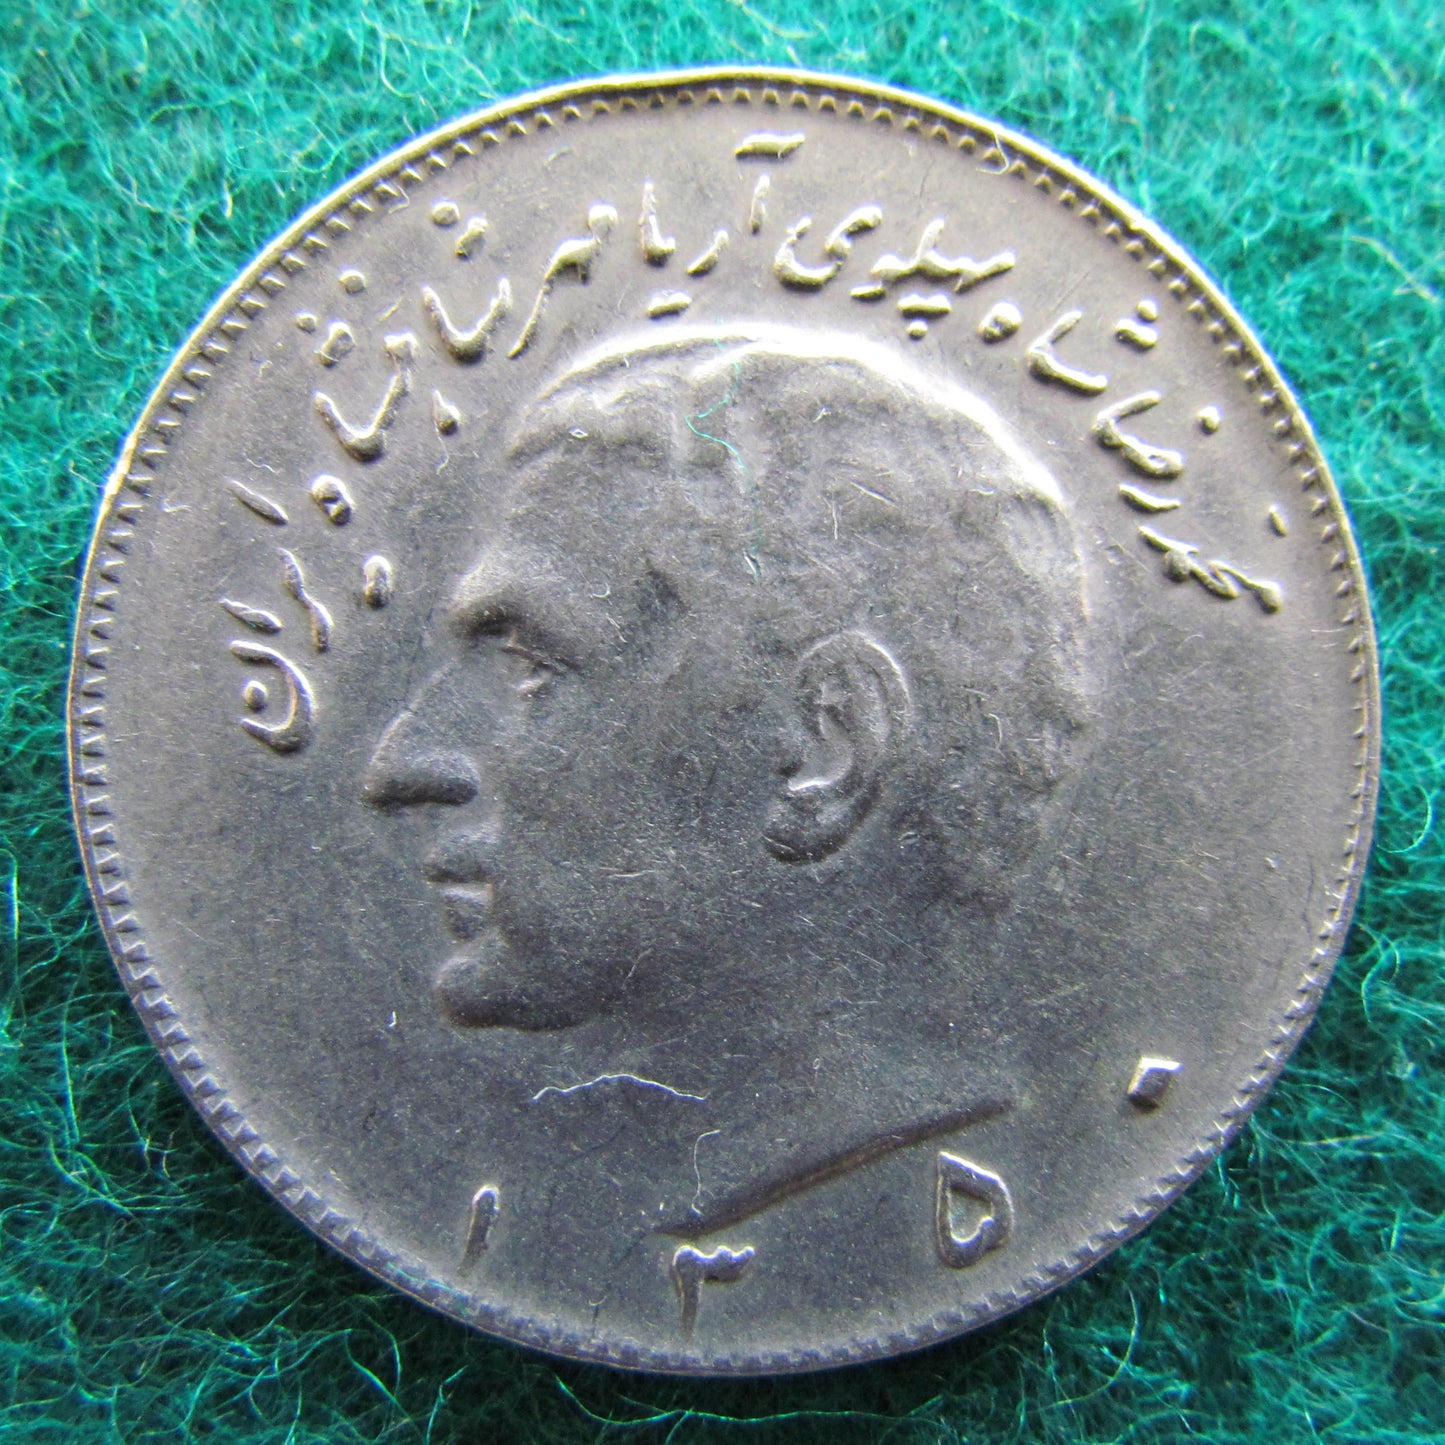 Iran 1971 10 Rials Sha Mohammad Reza Pahlavi Coin - Circulated